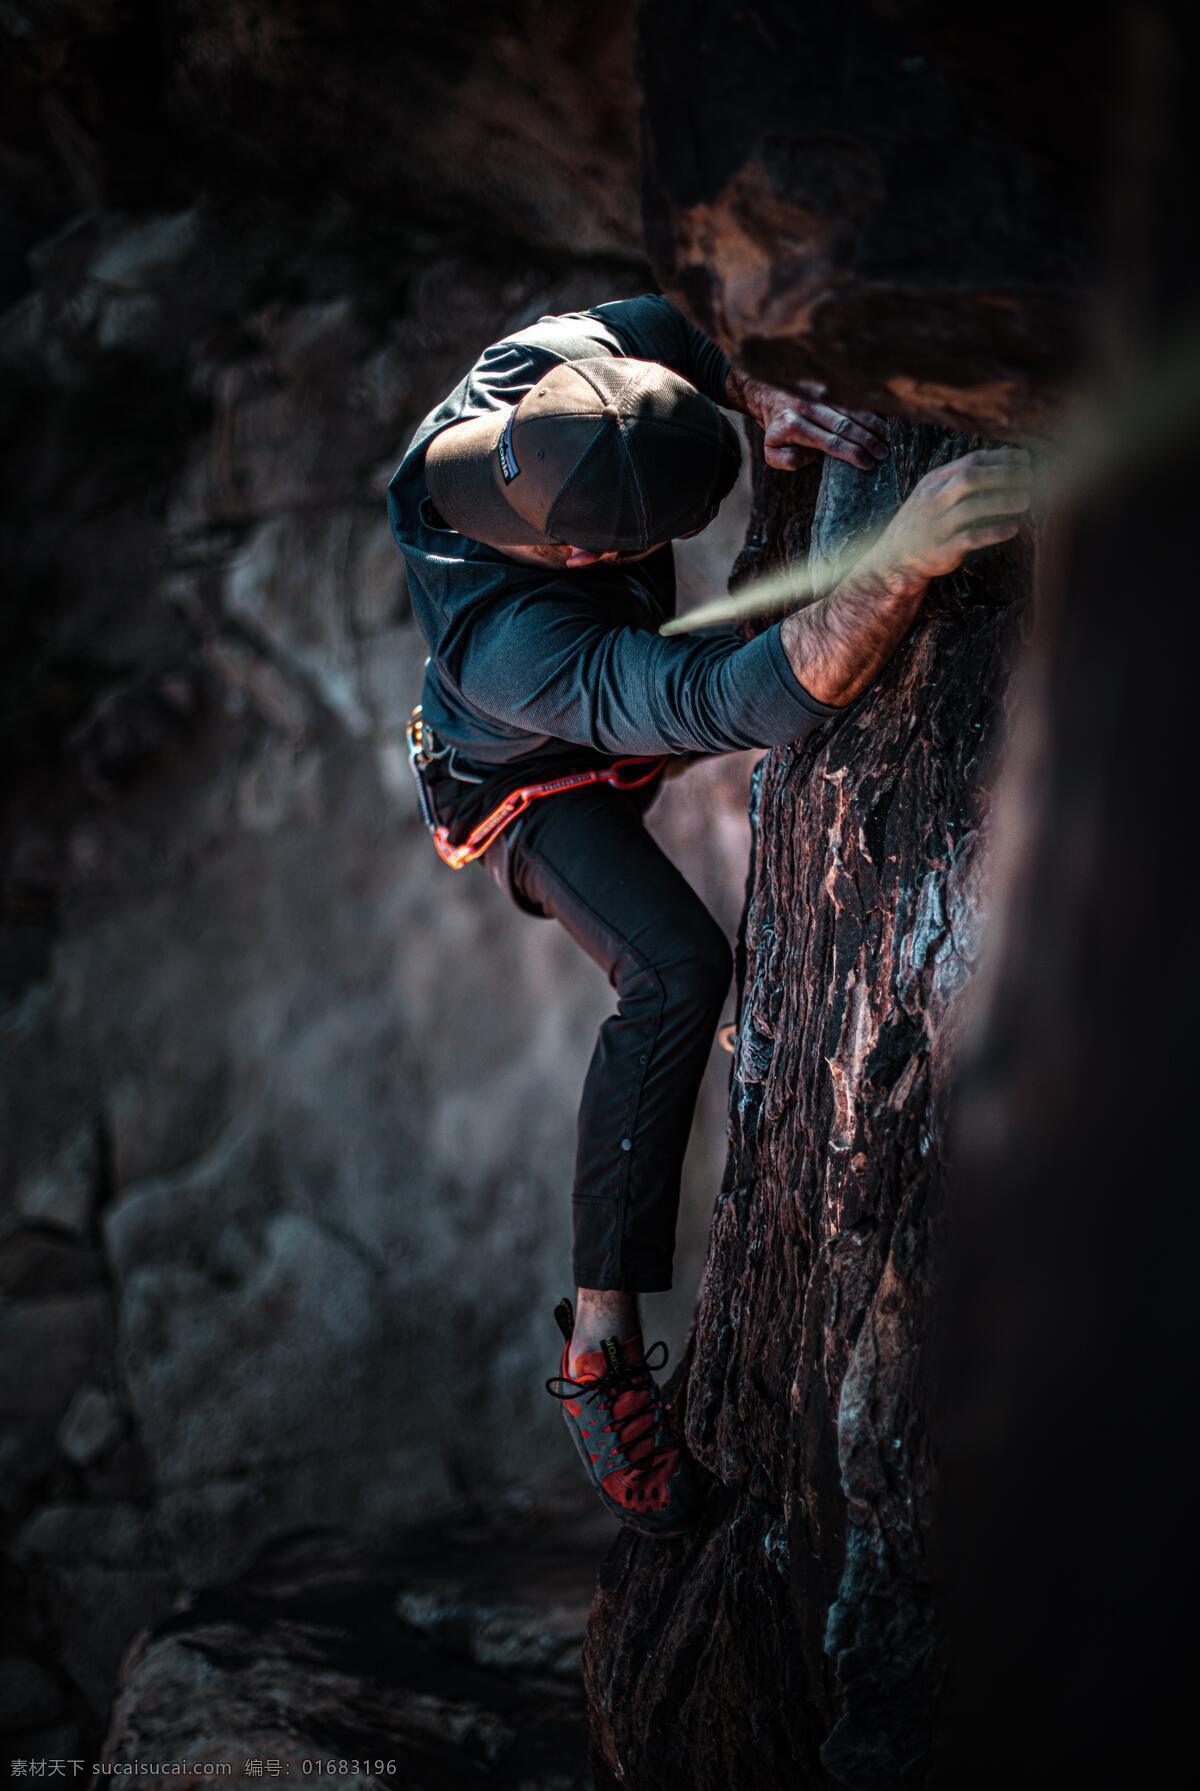 极限运动 攀岩 攀登 岩壁 峭壁 正在攀岩 户外运动 极限挑战 正在攀岩的人 图库运动娱乐 生活百科